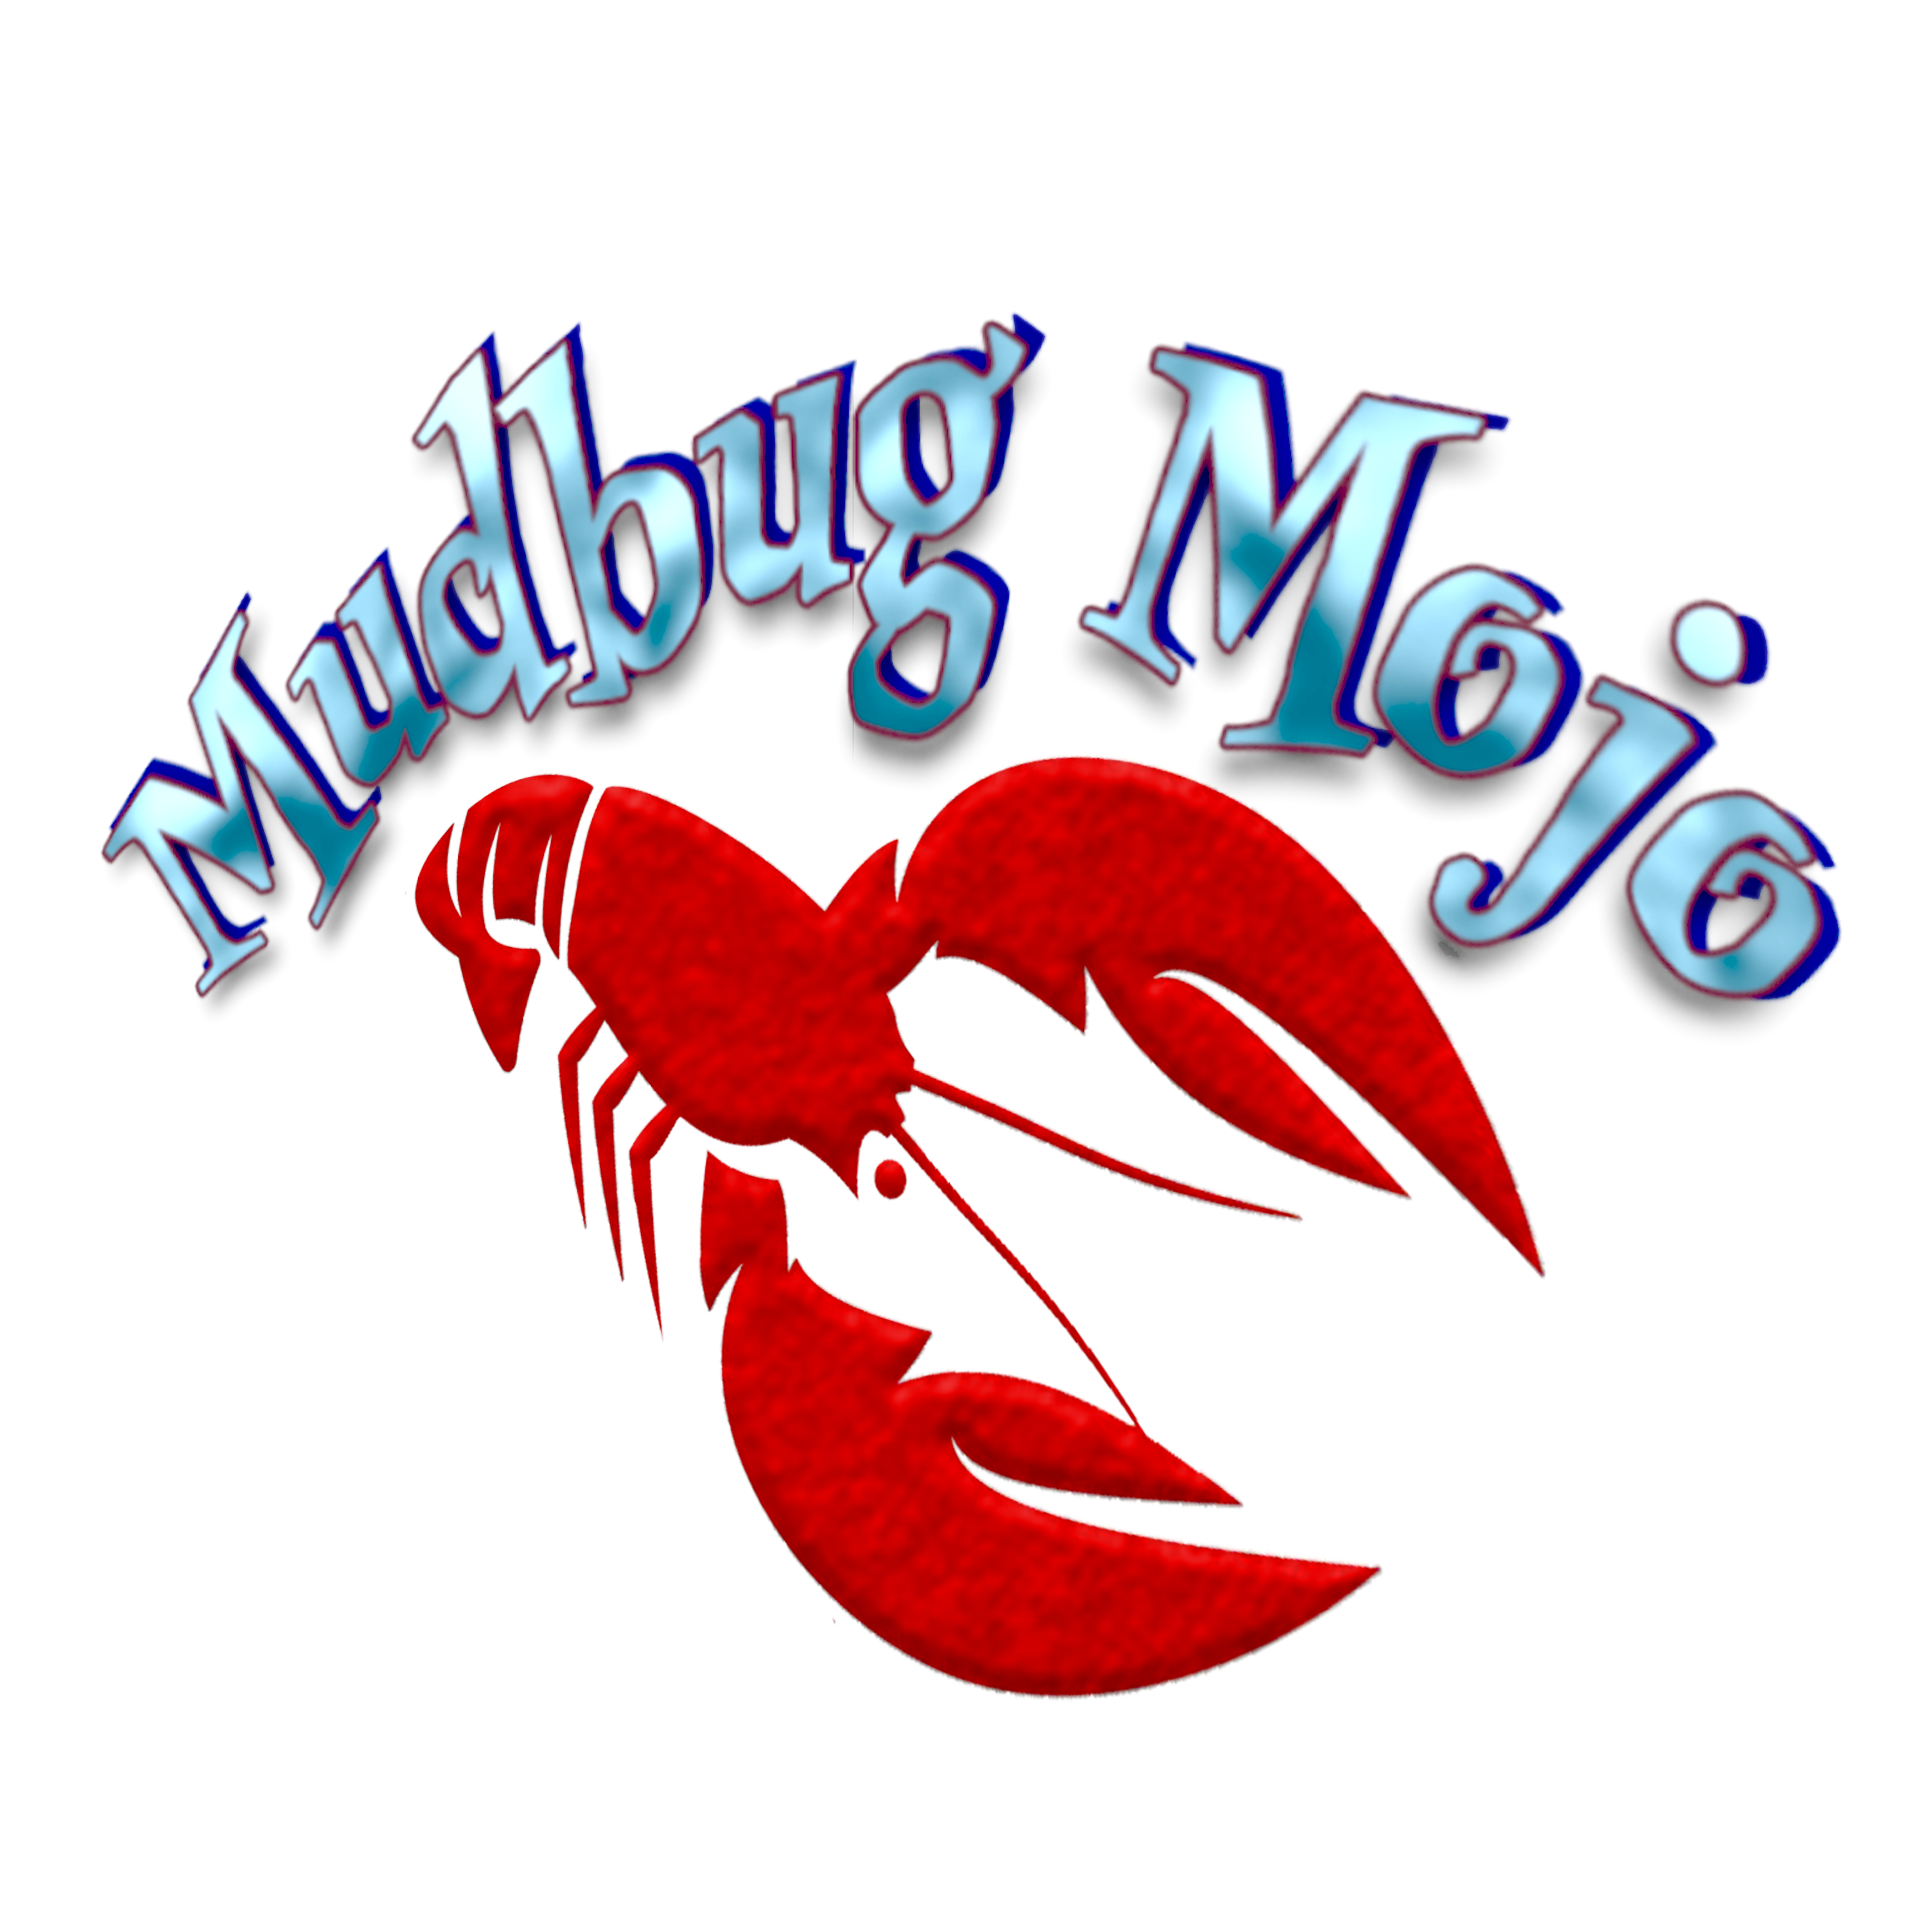 Mudbug Mojo logo